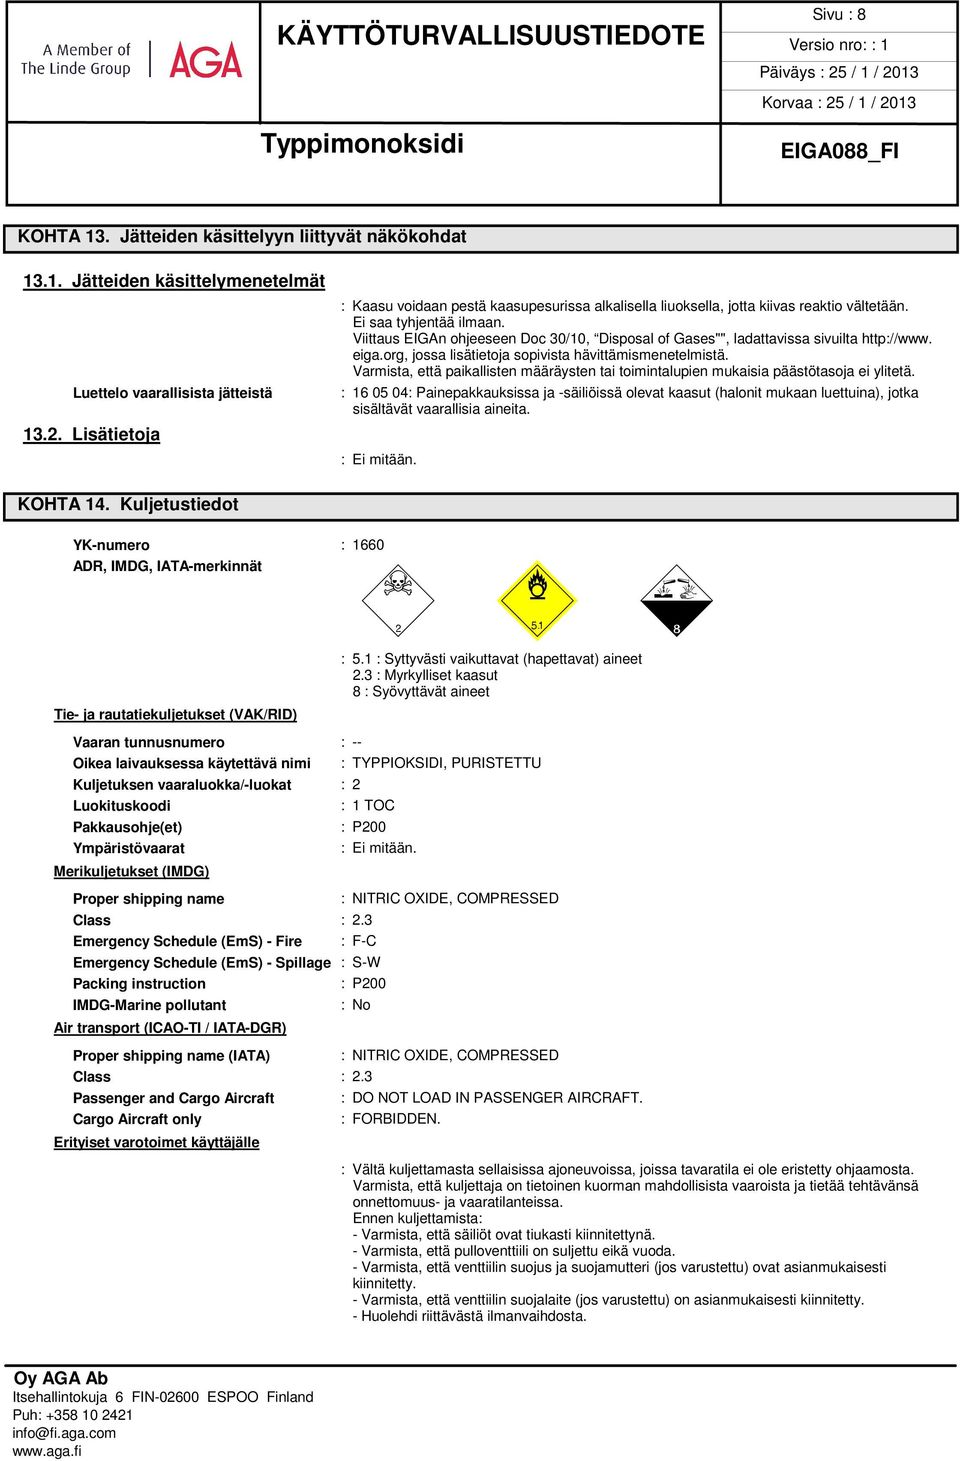 Viittaus EIGAn ohjeeseen Doc 30/10, Disposal of Gases"", ladattavissa sivuilta http://www. eiga.org, jossa lisätietoja sopivista hävittämismenetelmistä.